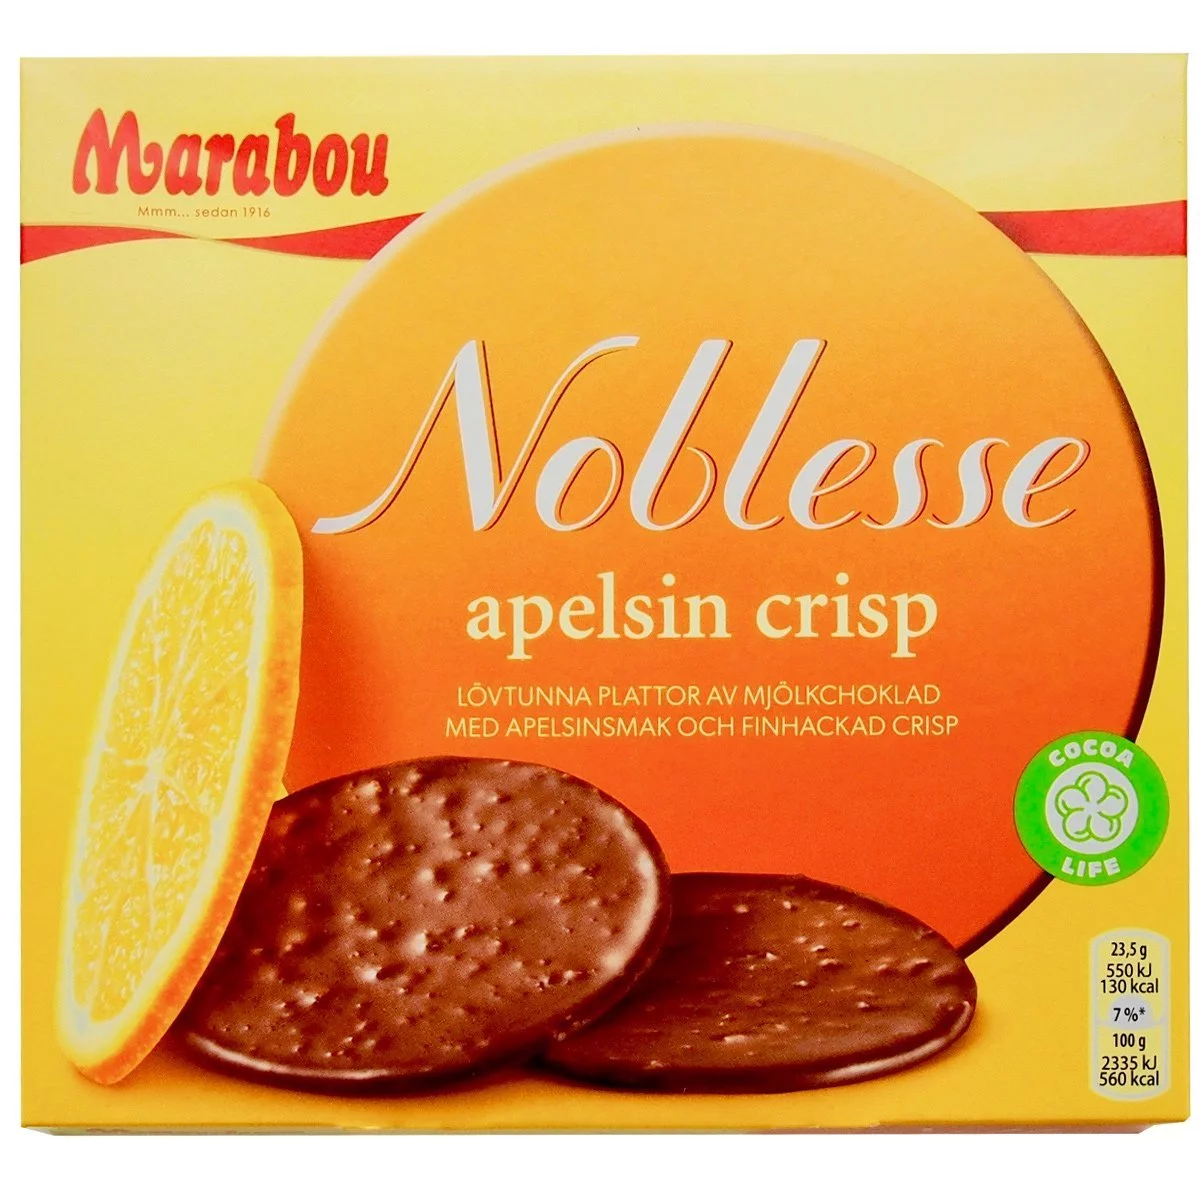 Marabou Noblesse apelsin crisp (150g) 1